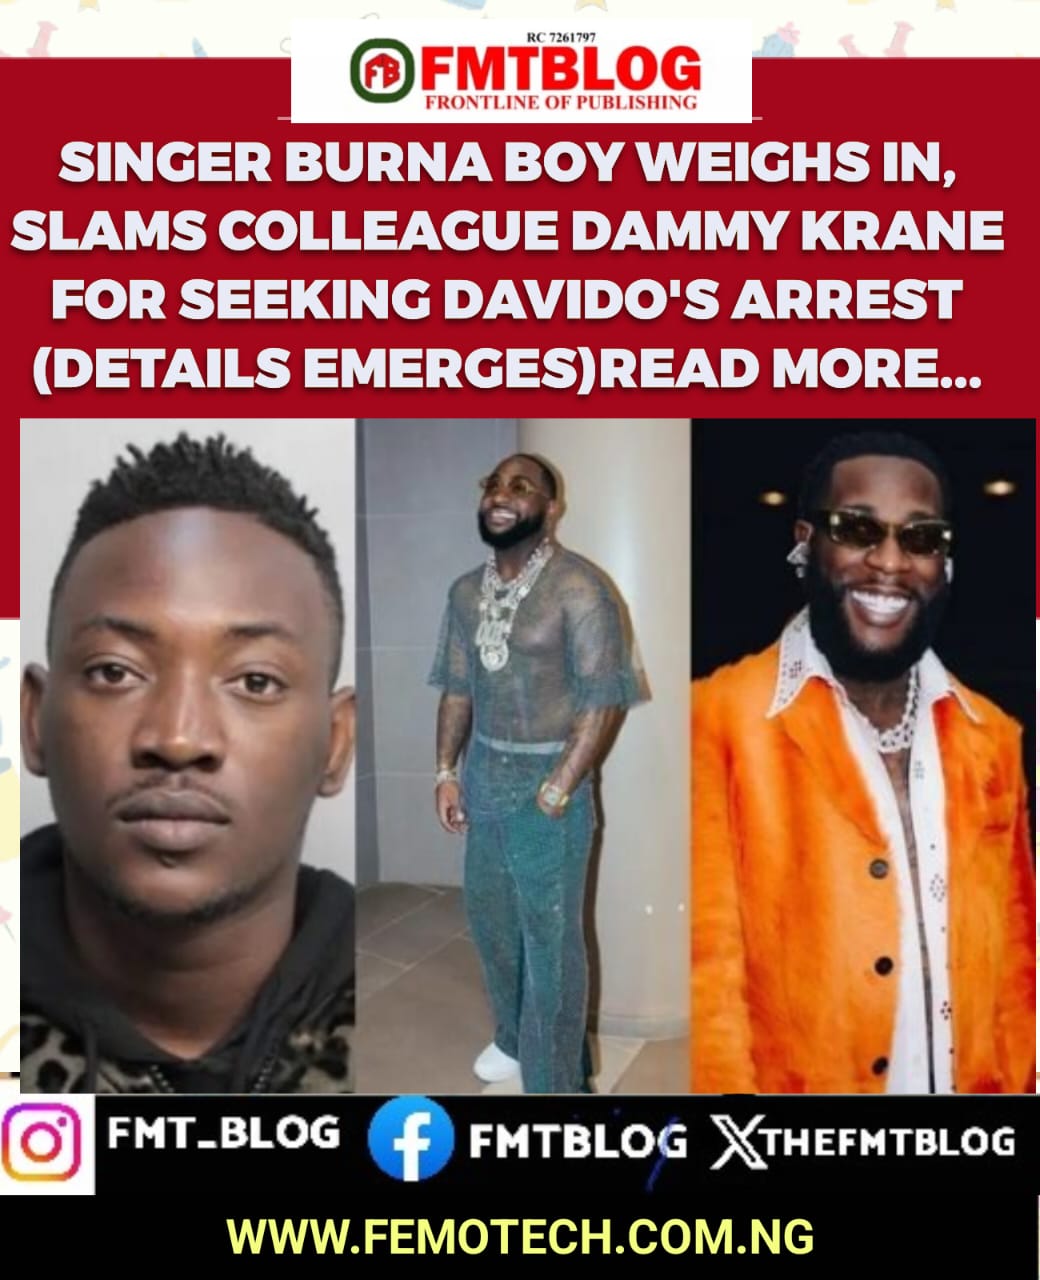 Singer Burna Boy Weighs In, Slams Colleague Dammy Krane For Seeking Davido’s Arrest